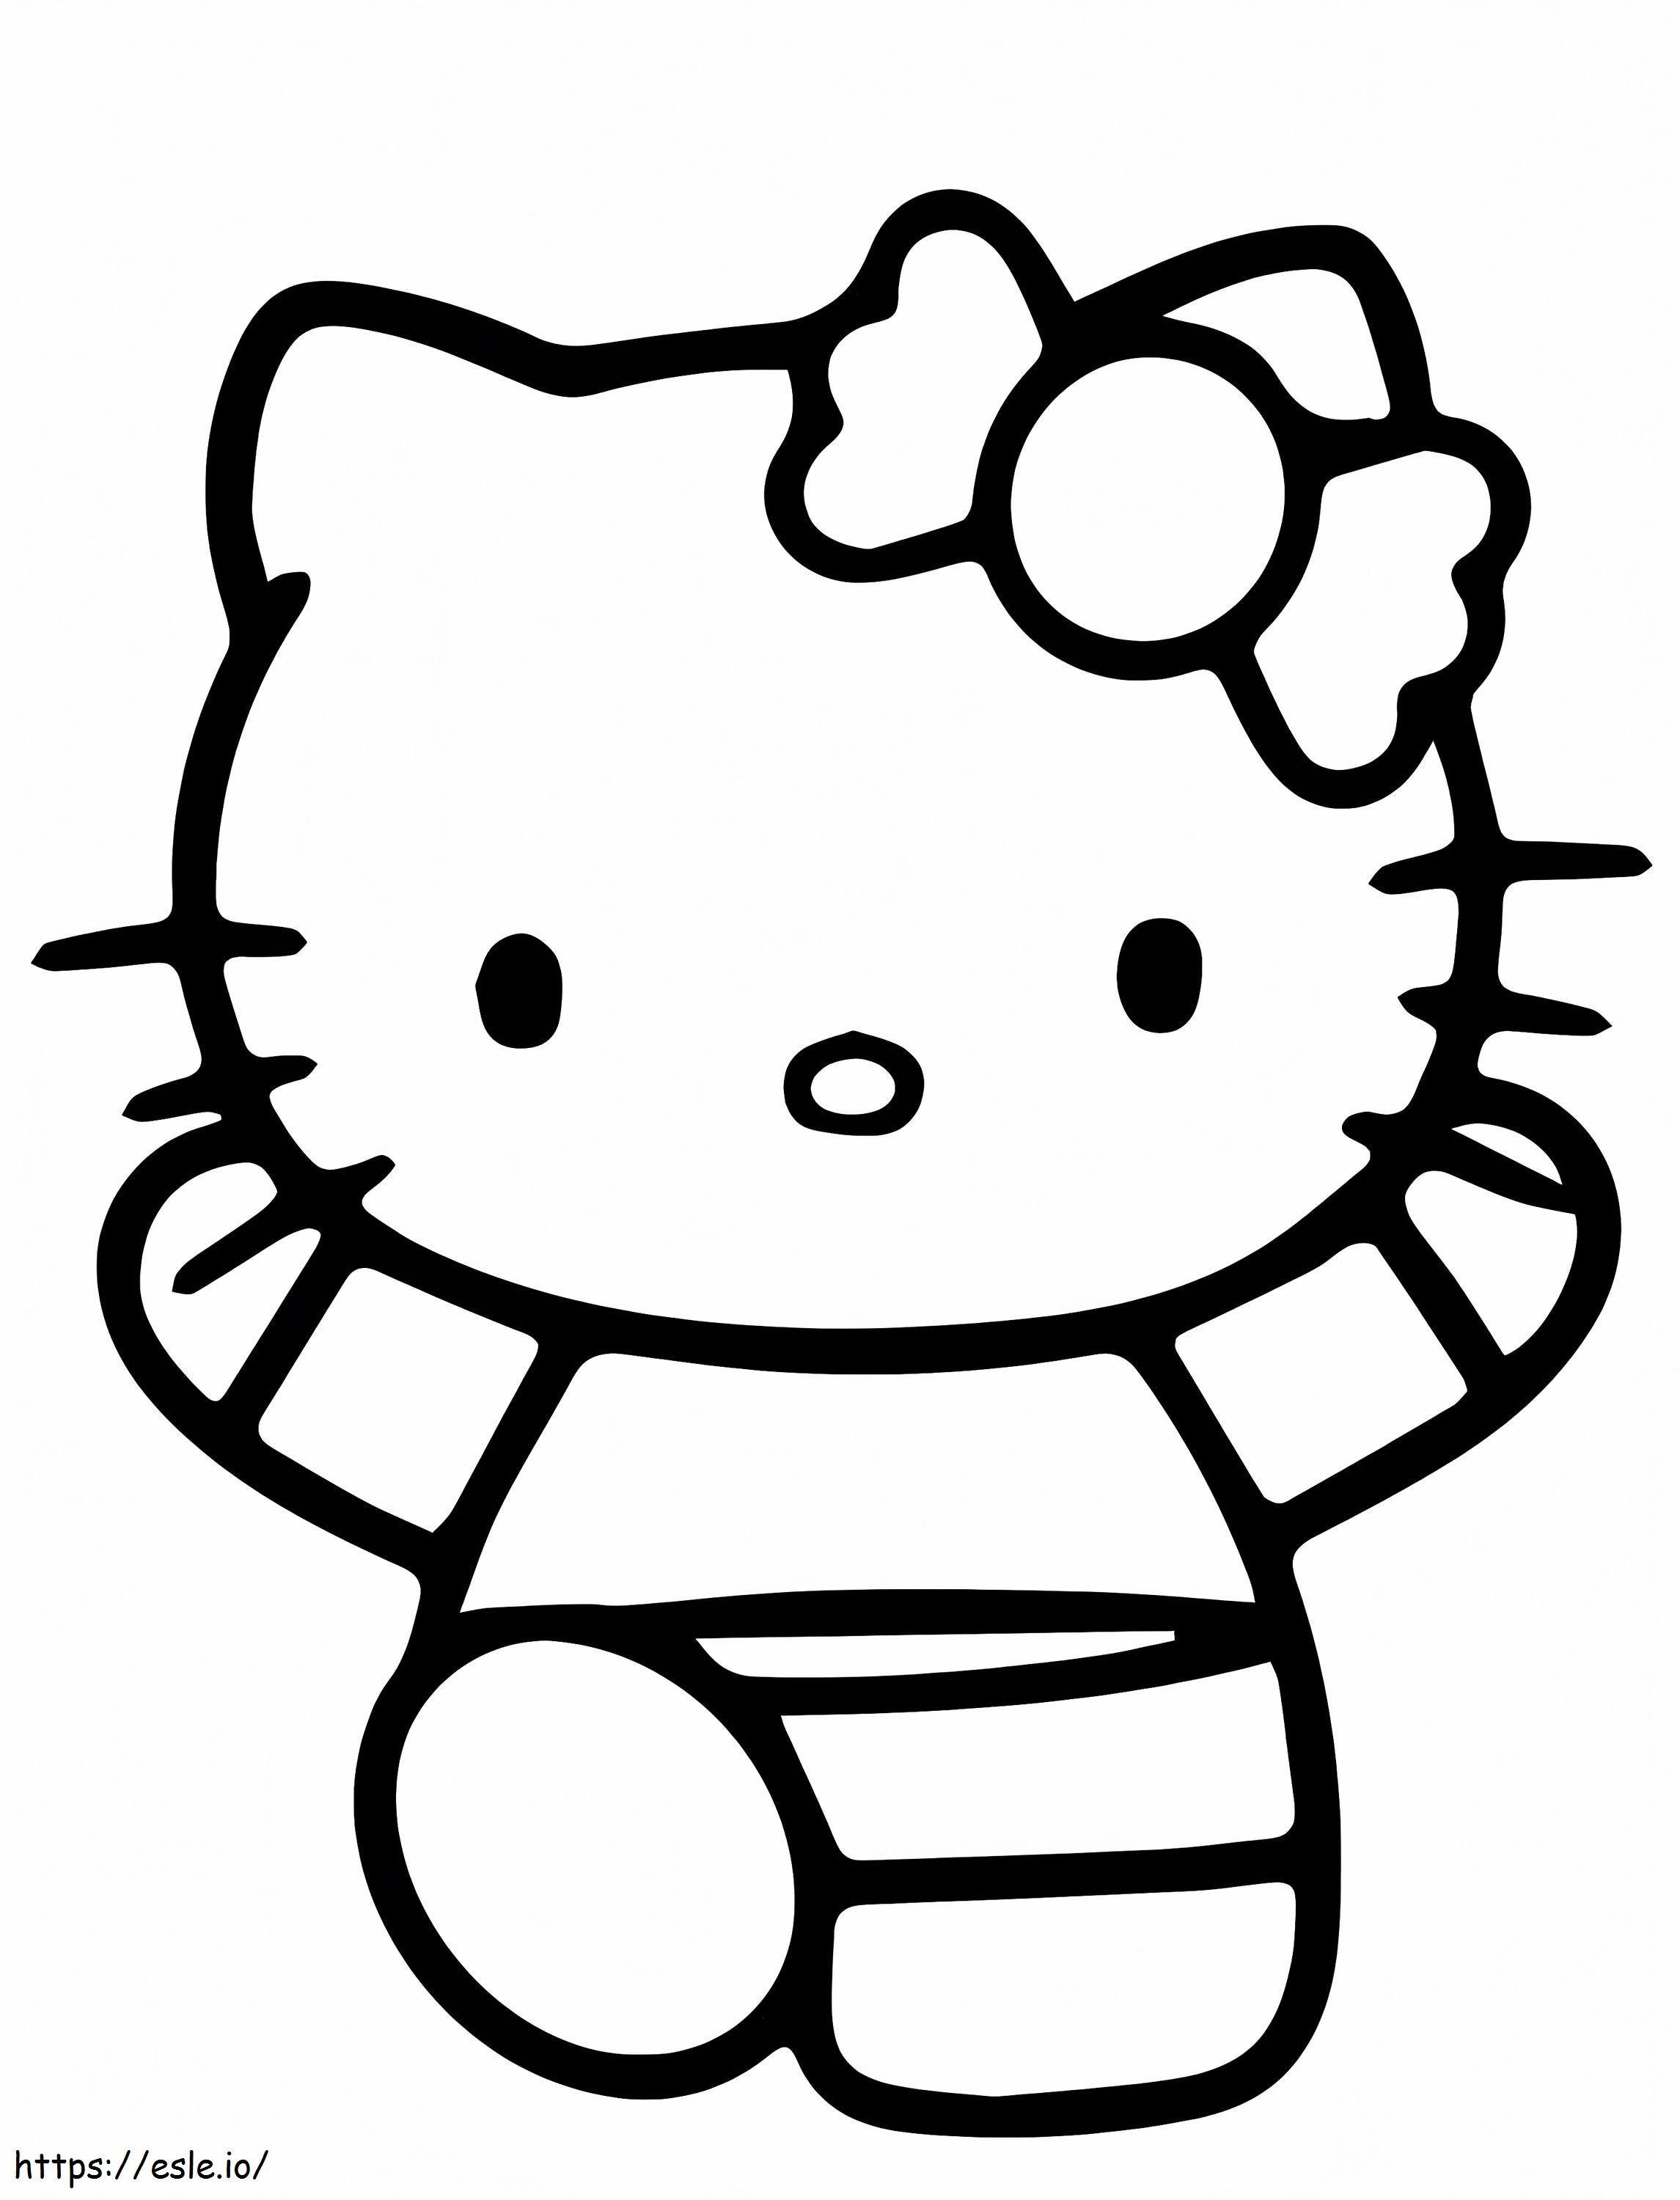 Hello Kitty gratis da colorare